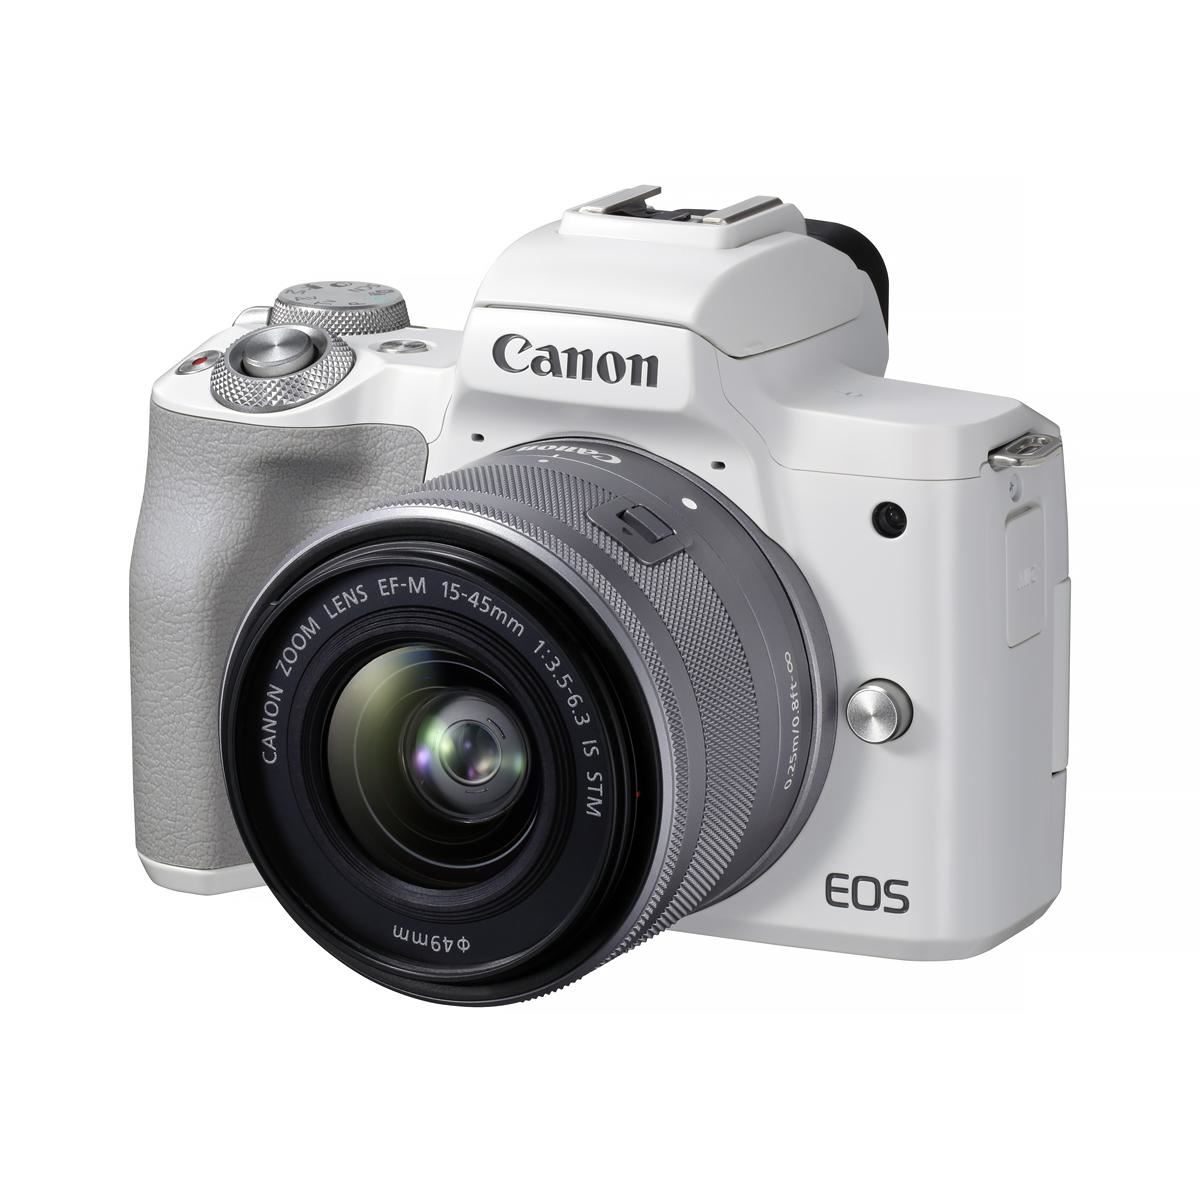 946 送料無料 Canon ミラーレス一眼カメラ EOS M2